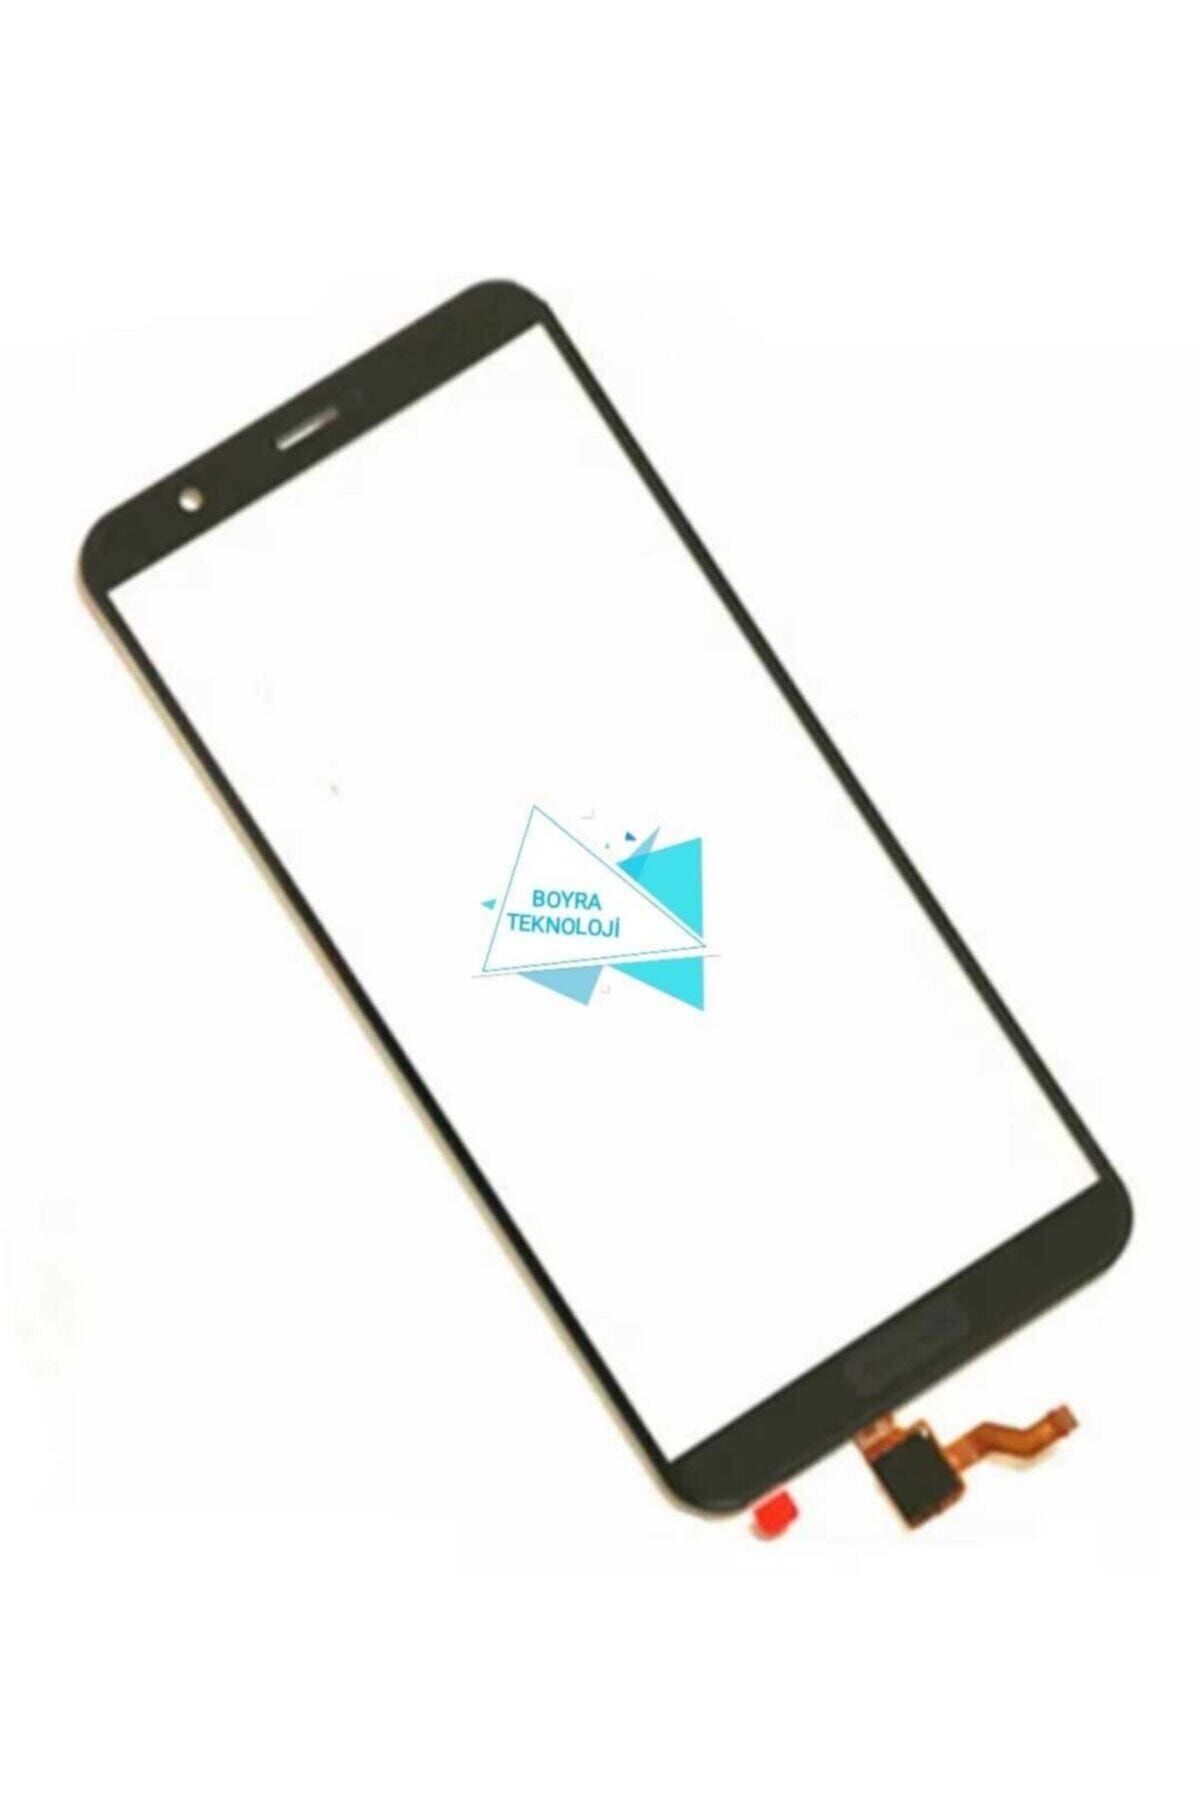 Boyra Teknoloji Huawei P Smart 2018 Okalı Uyumlu Dokunmatik Ön Cam (ekran Değildir) Beyaz